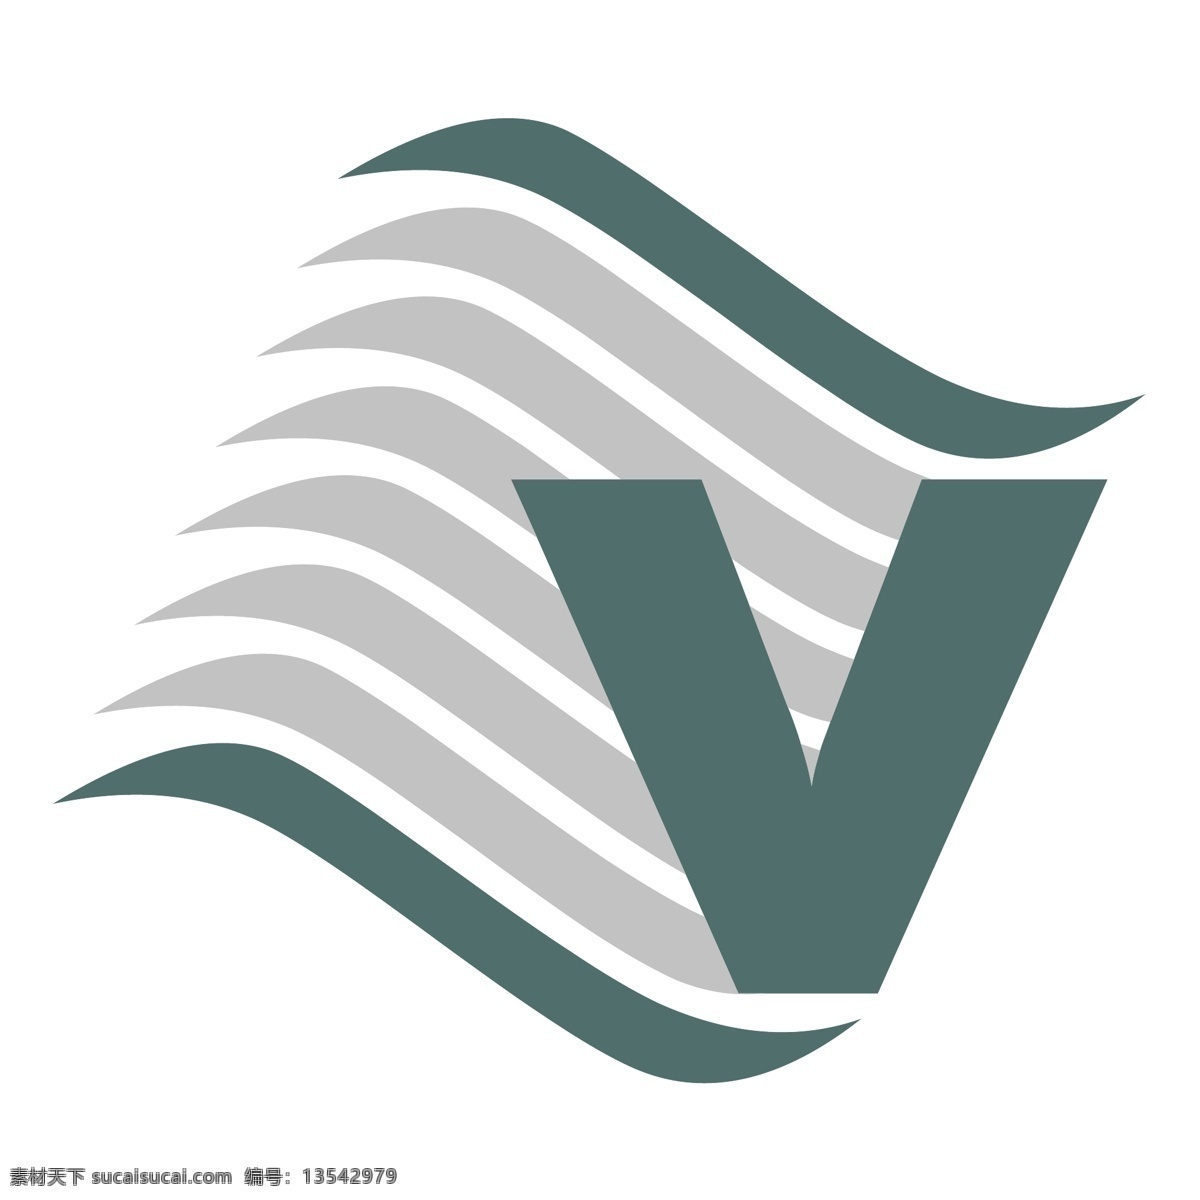 瓦里 斯科 温泉 免费 spa 标志 标识 psd源文件 logo设计